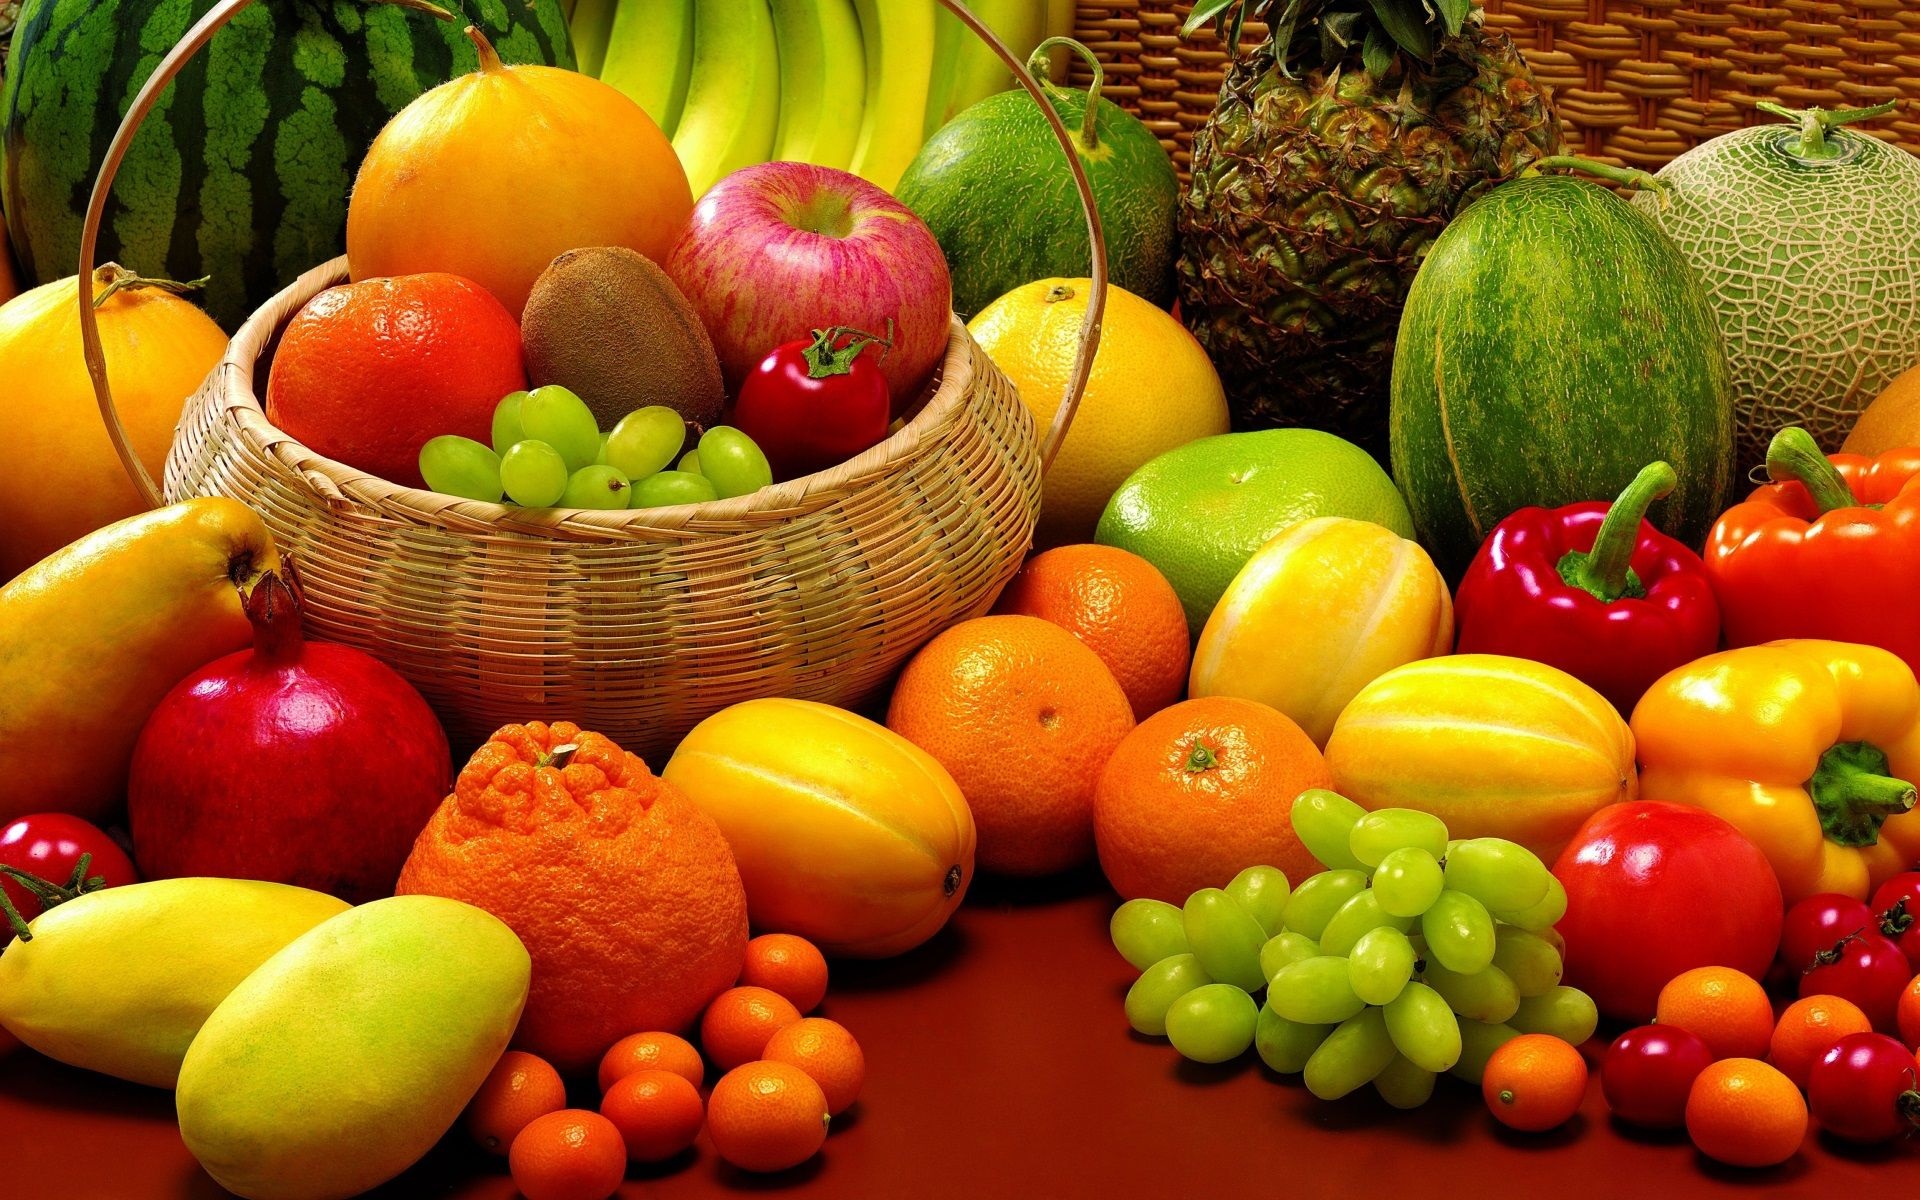 فاكهة تحميك من ضغط الدم والجلطات الدماغية والنوبات القلبية... وتقوي مناعة جسمك وتبعدك عن الأمراض 